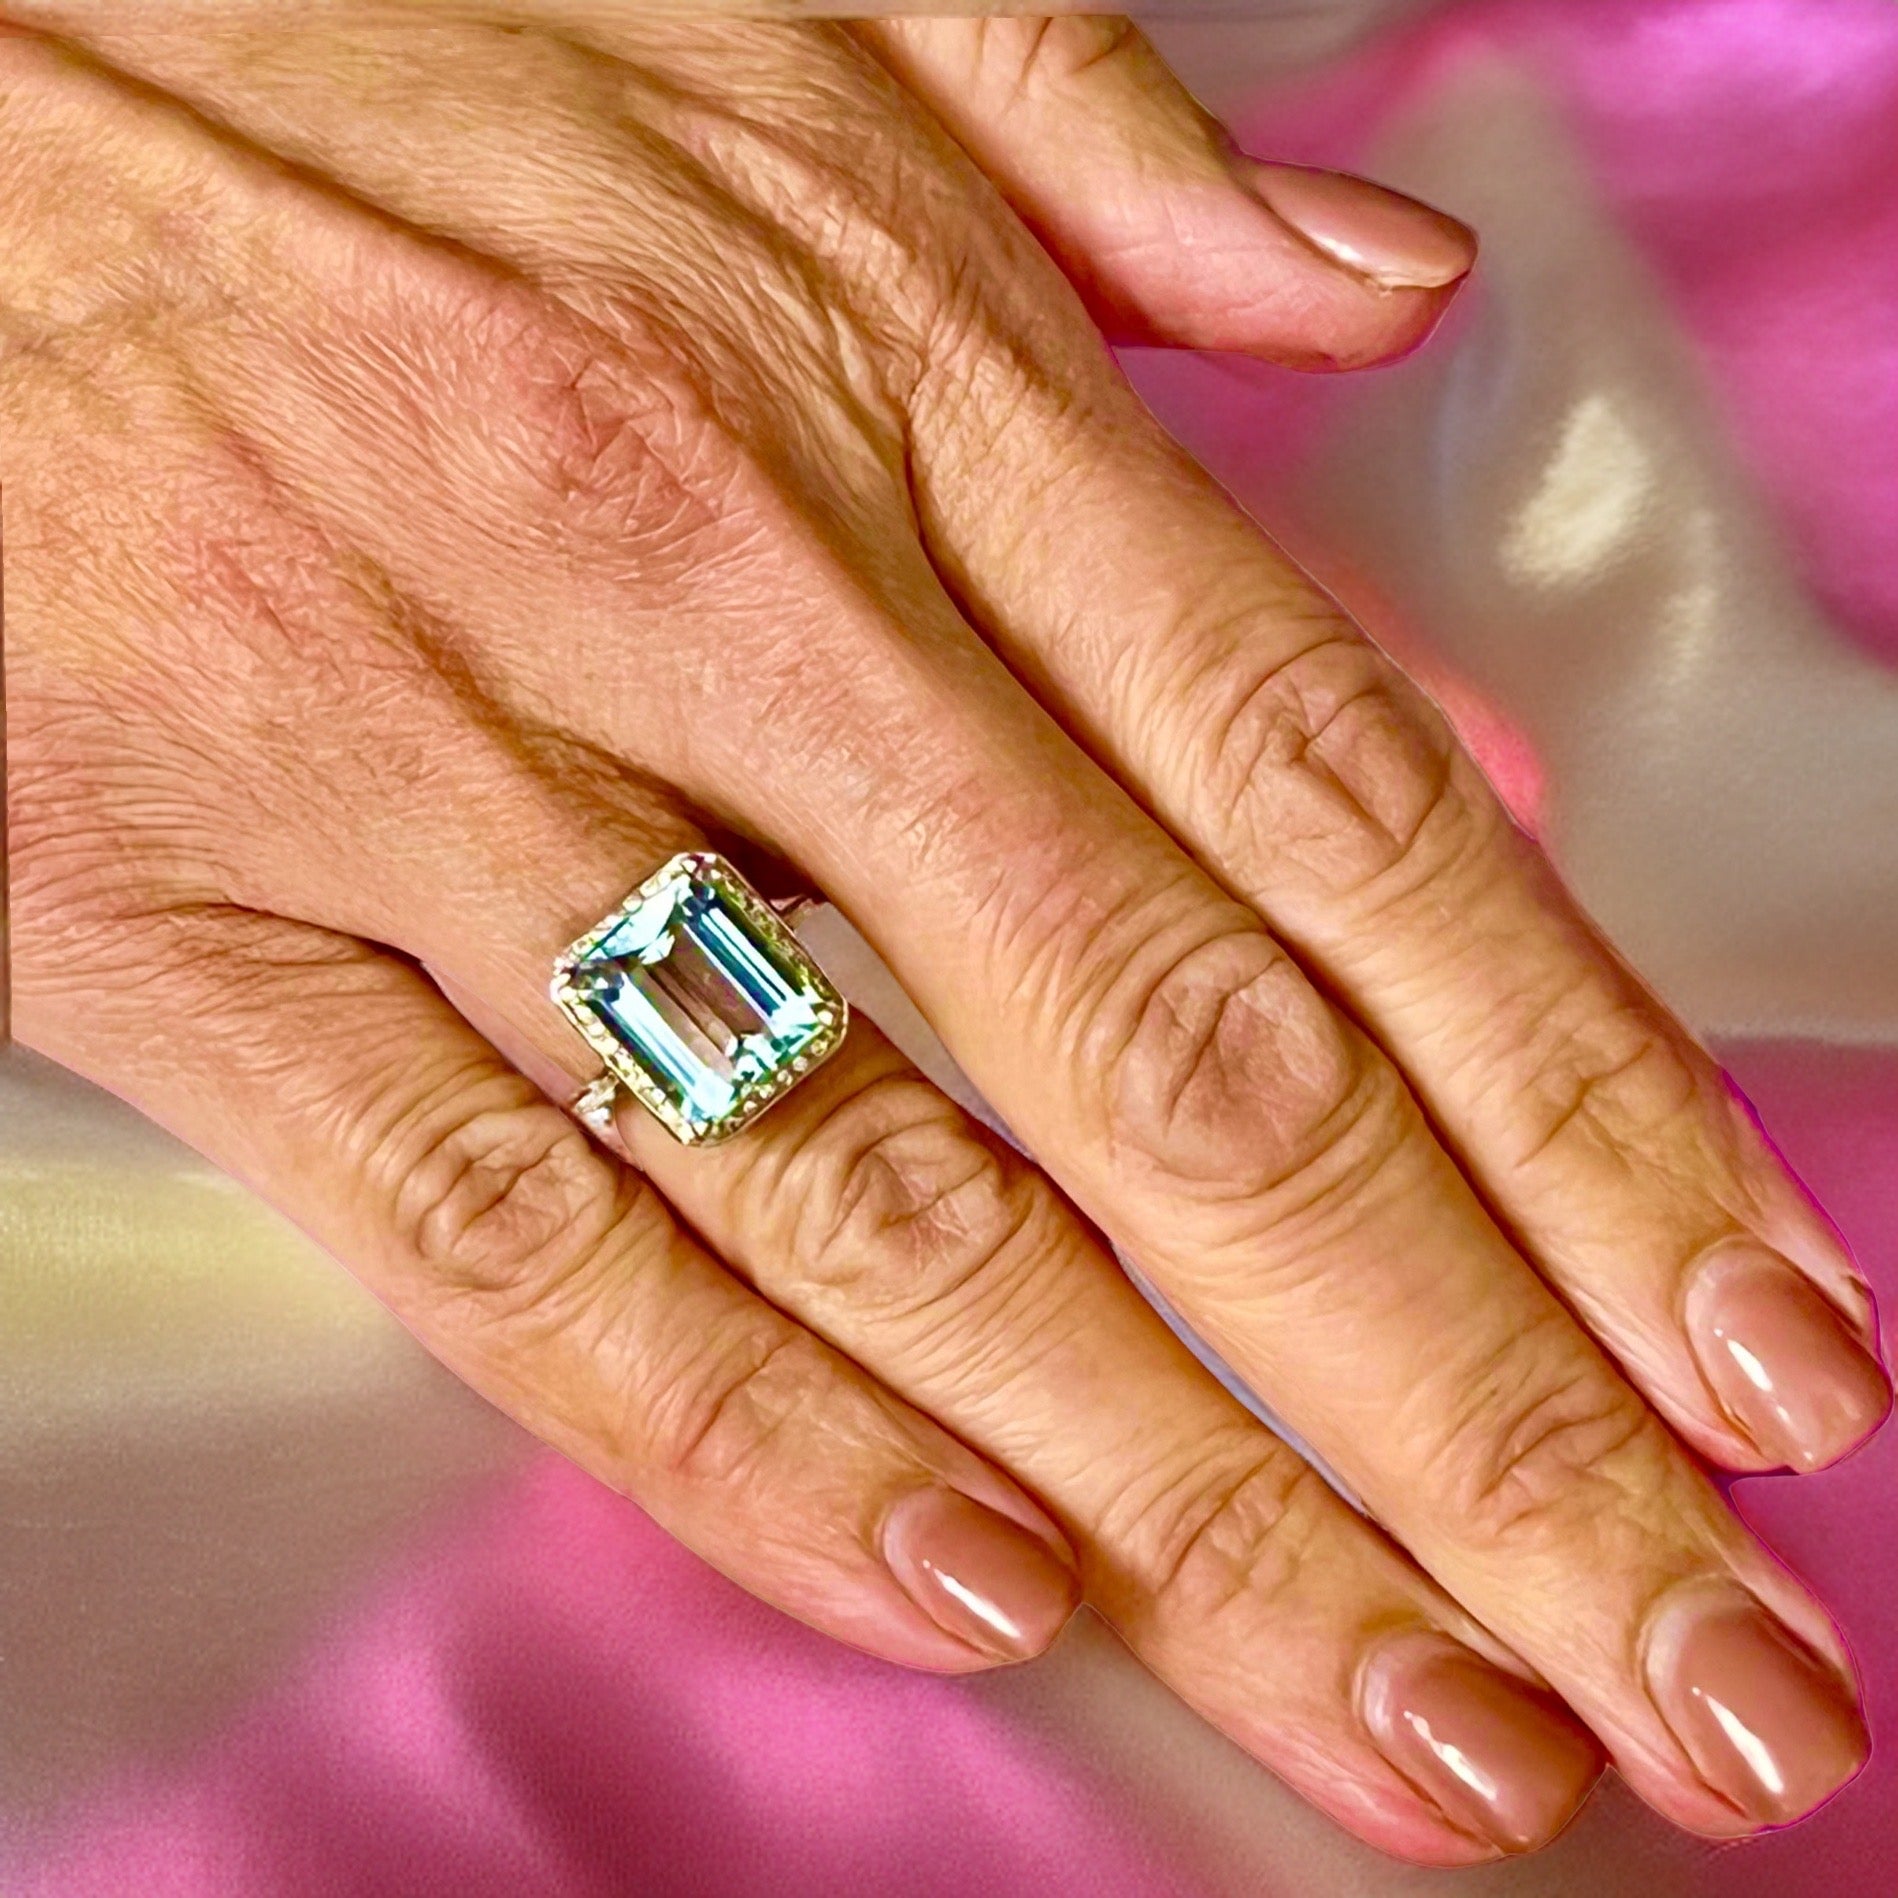 Diamond Aquamarine Ring Size 6.75 14k Gold 6.25 TCW Certified $5,950 120671 - Certified Fine Jewelry